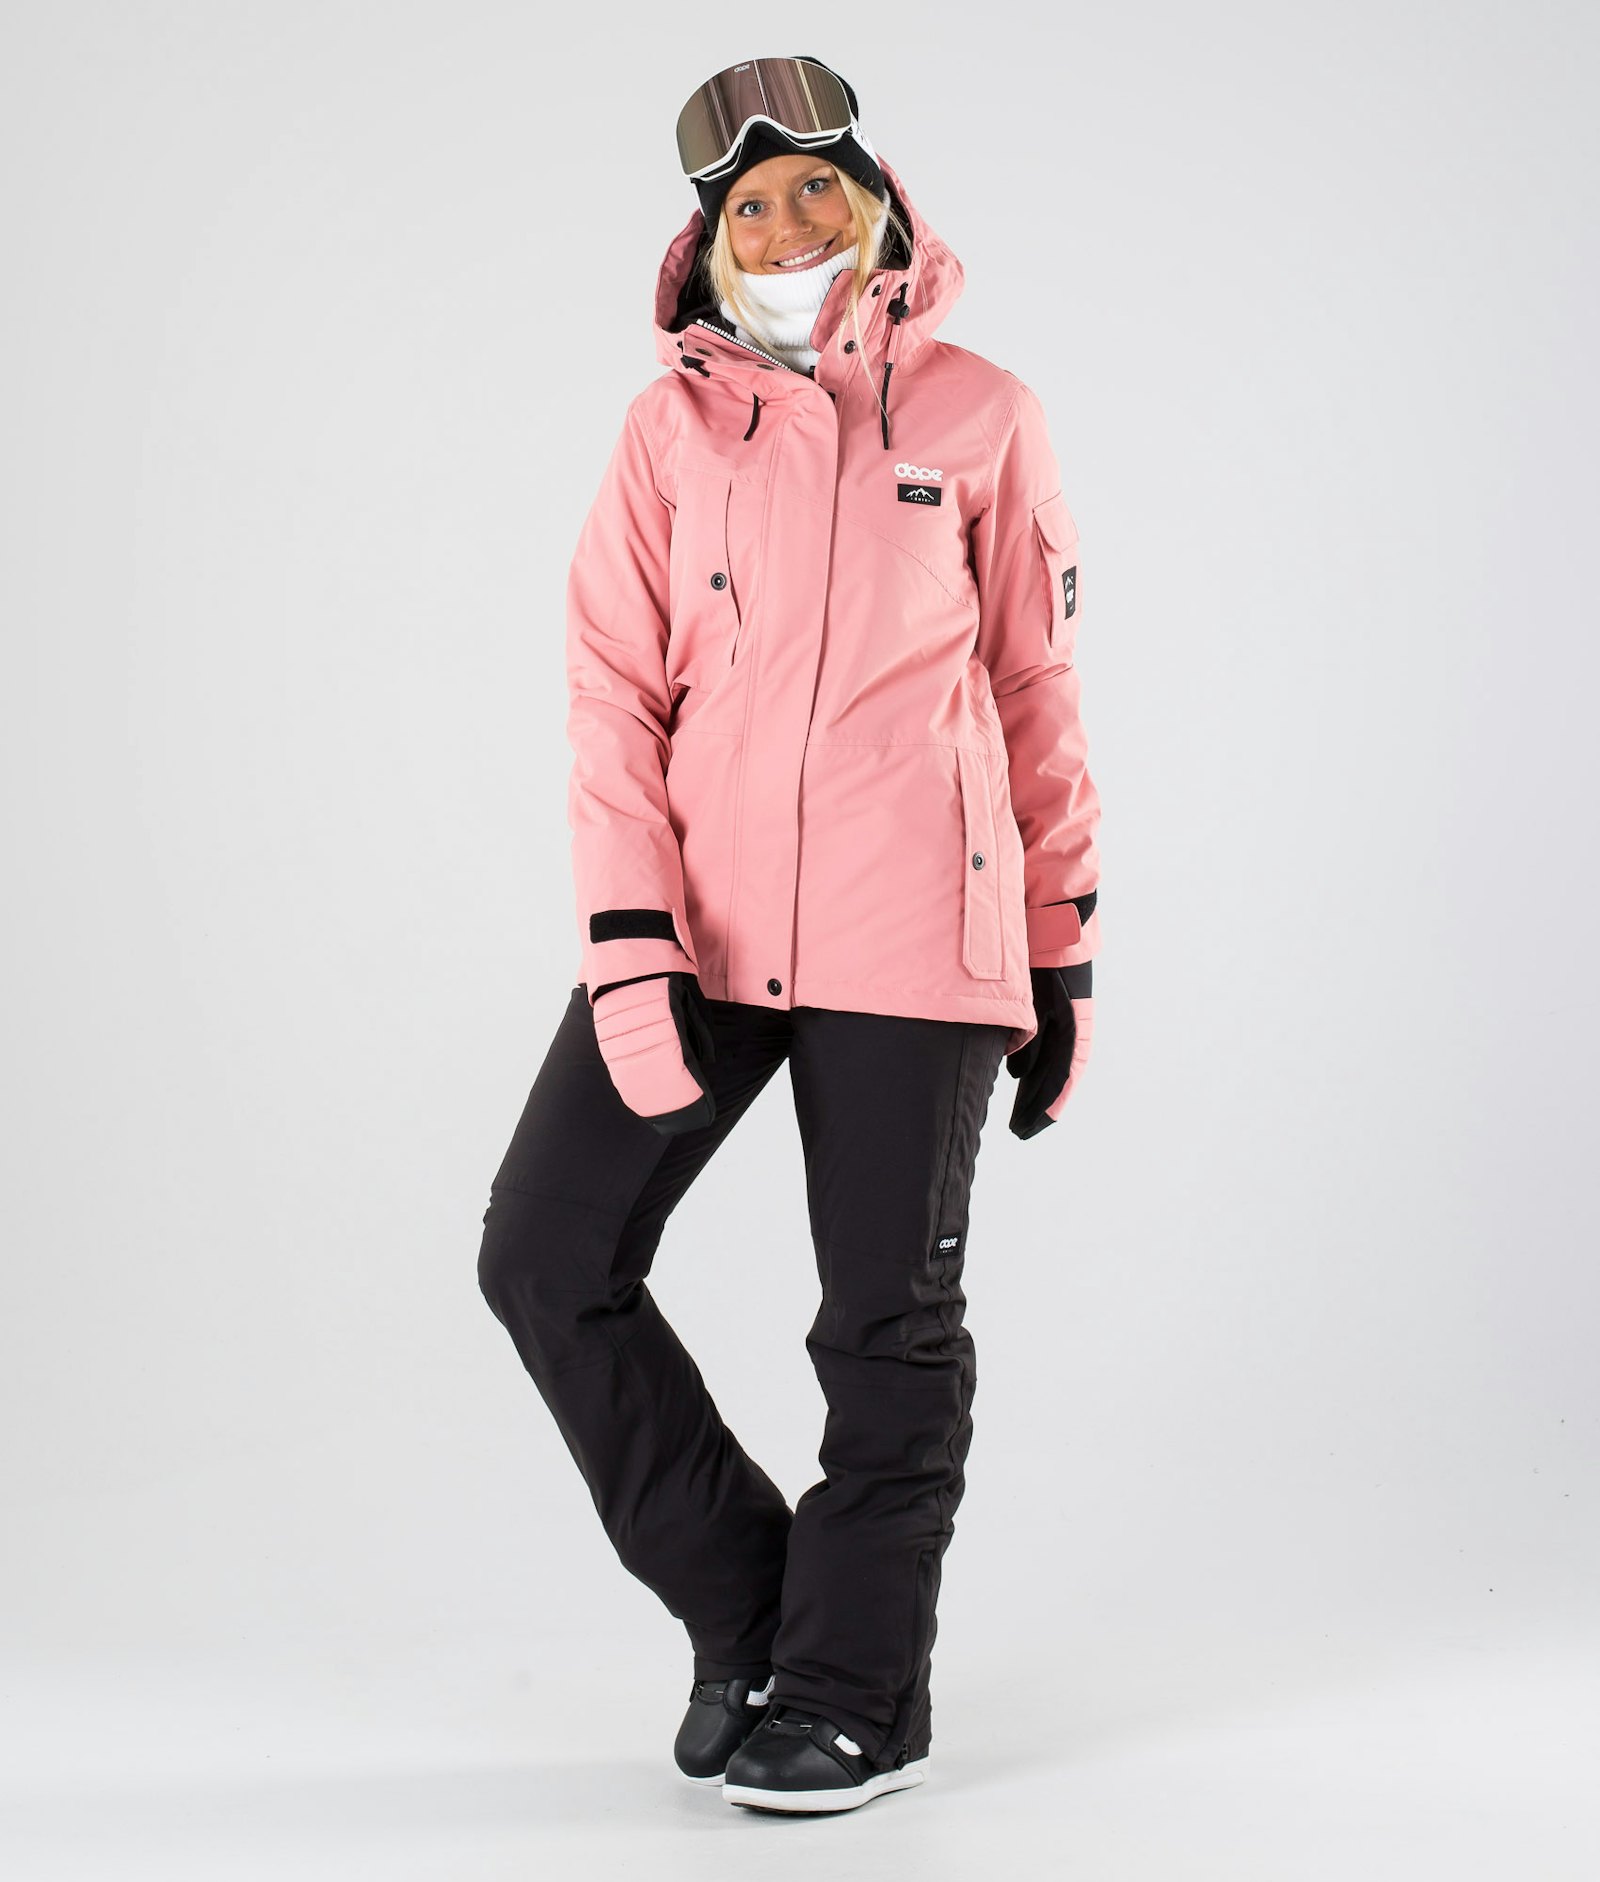 Adept W 2019 Veste Snowboard Femme Pink